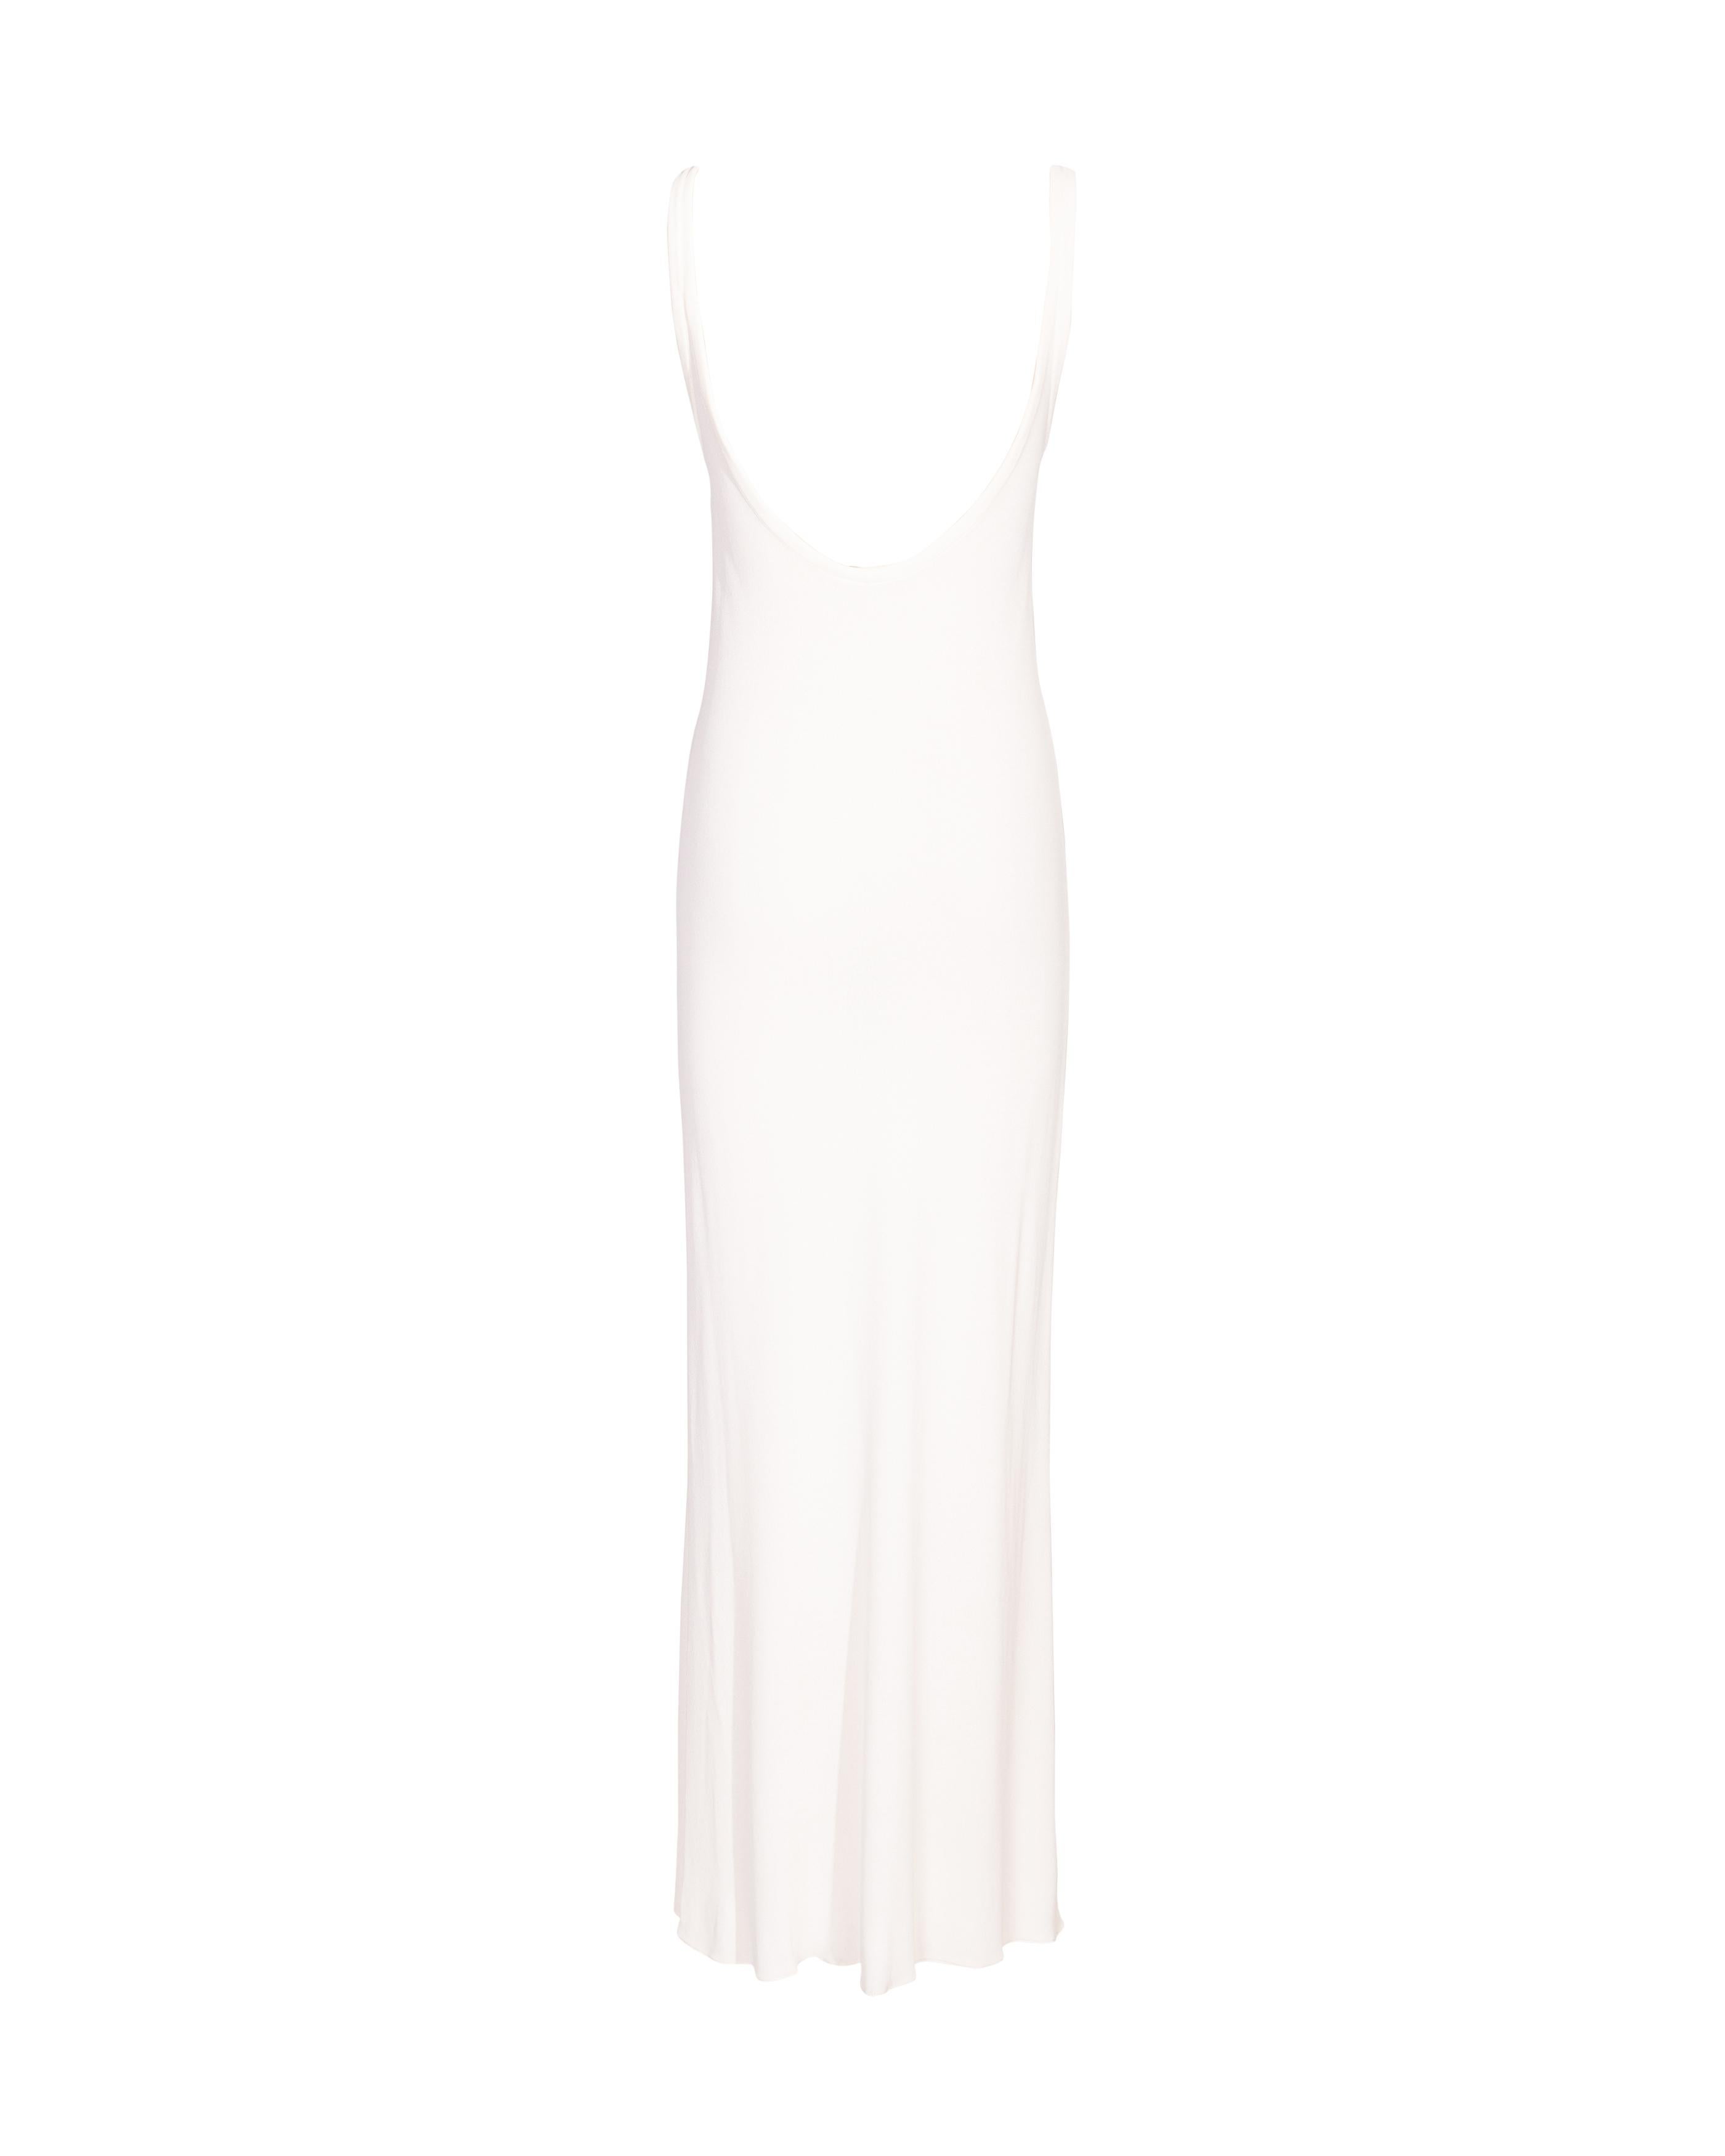 S/S 1994 Calvin Klein White Scoop Neck Maxi Dress 1